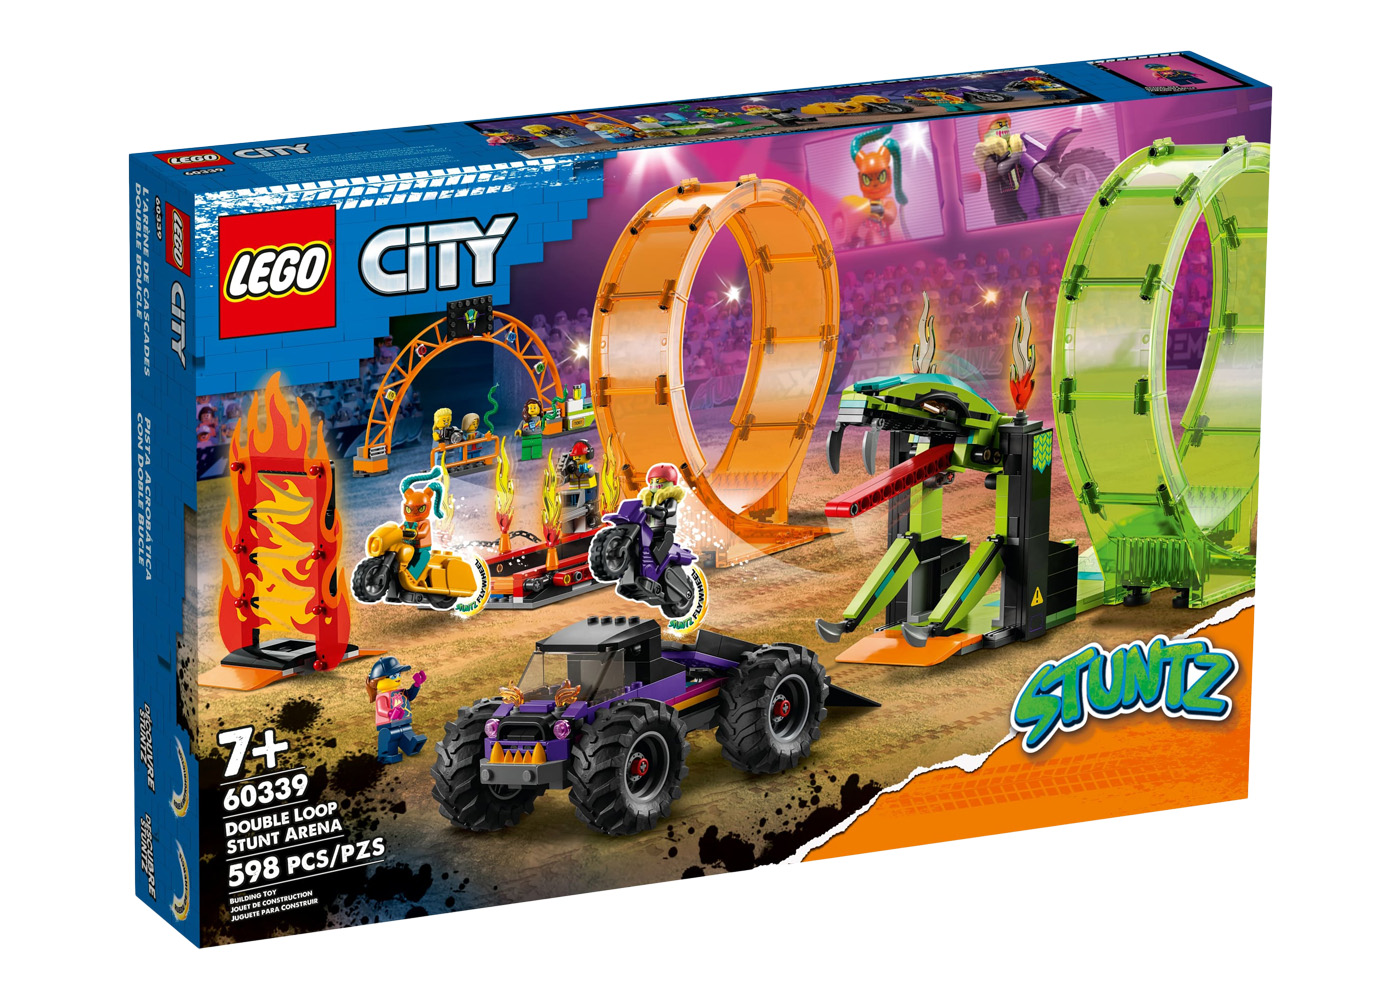 LEGO City Stuntz Double Loop Stunt Arena Set 60339